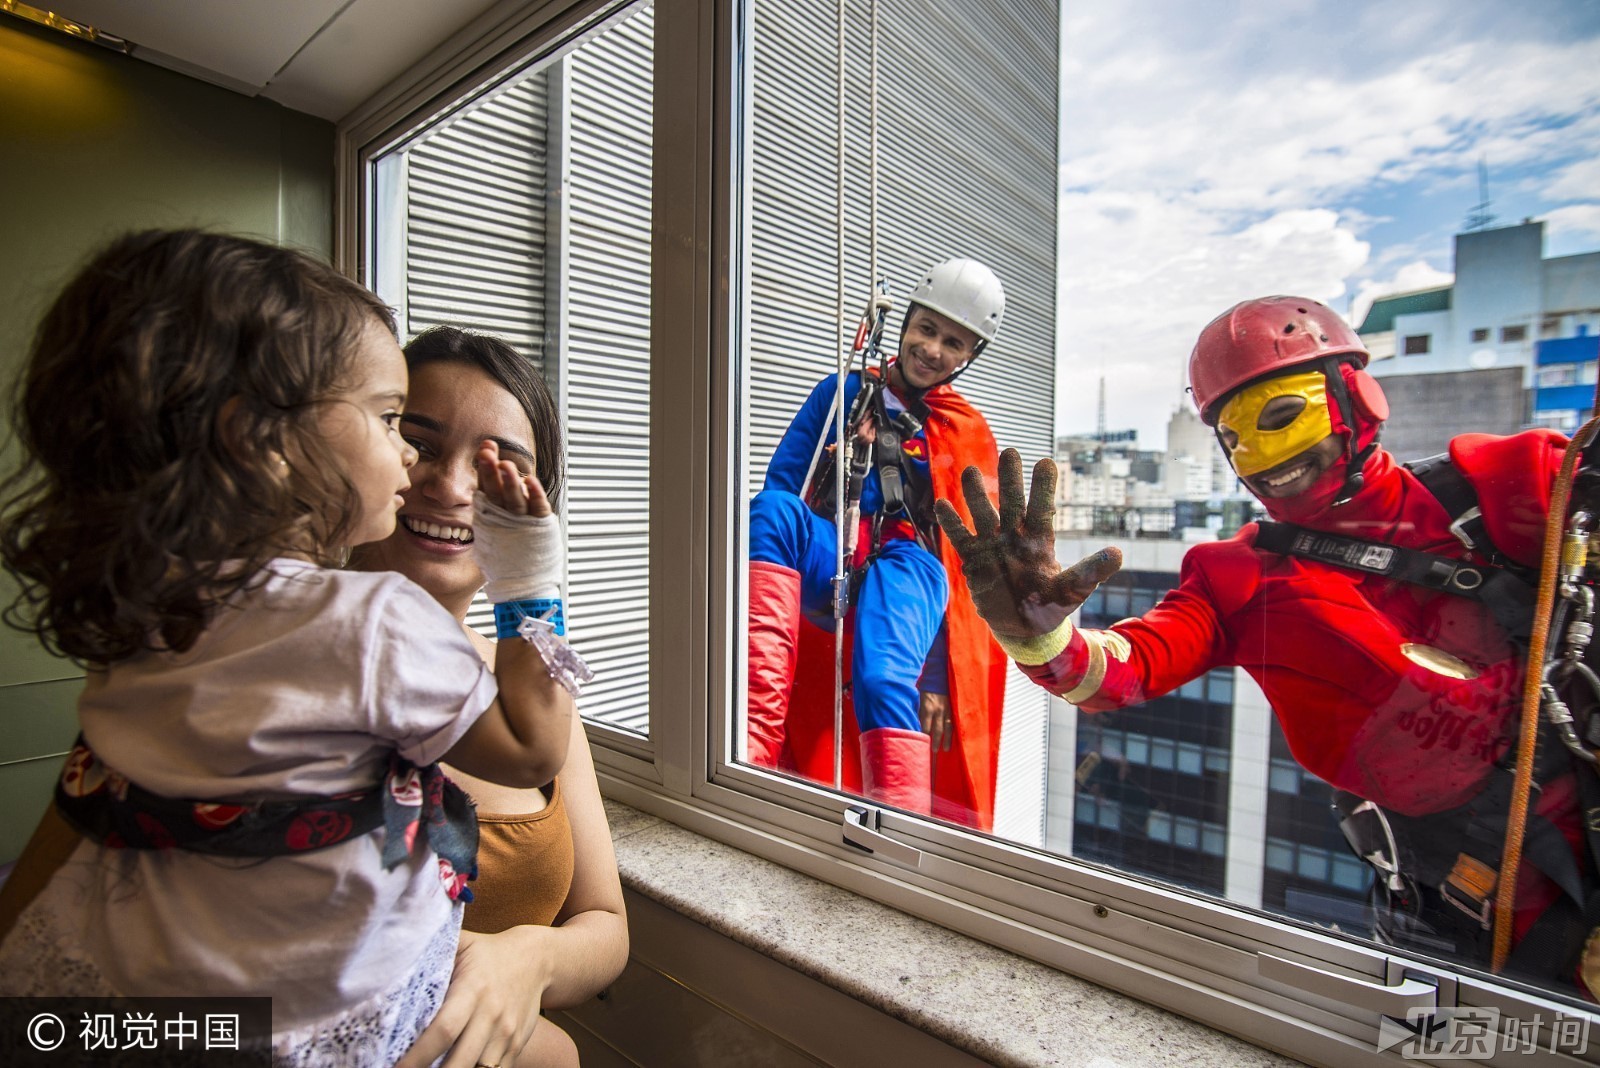 巴西庆祝儿童节 男子扮超人与患儿高空互动超暖心